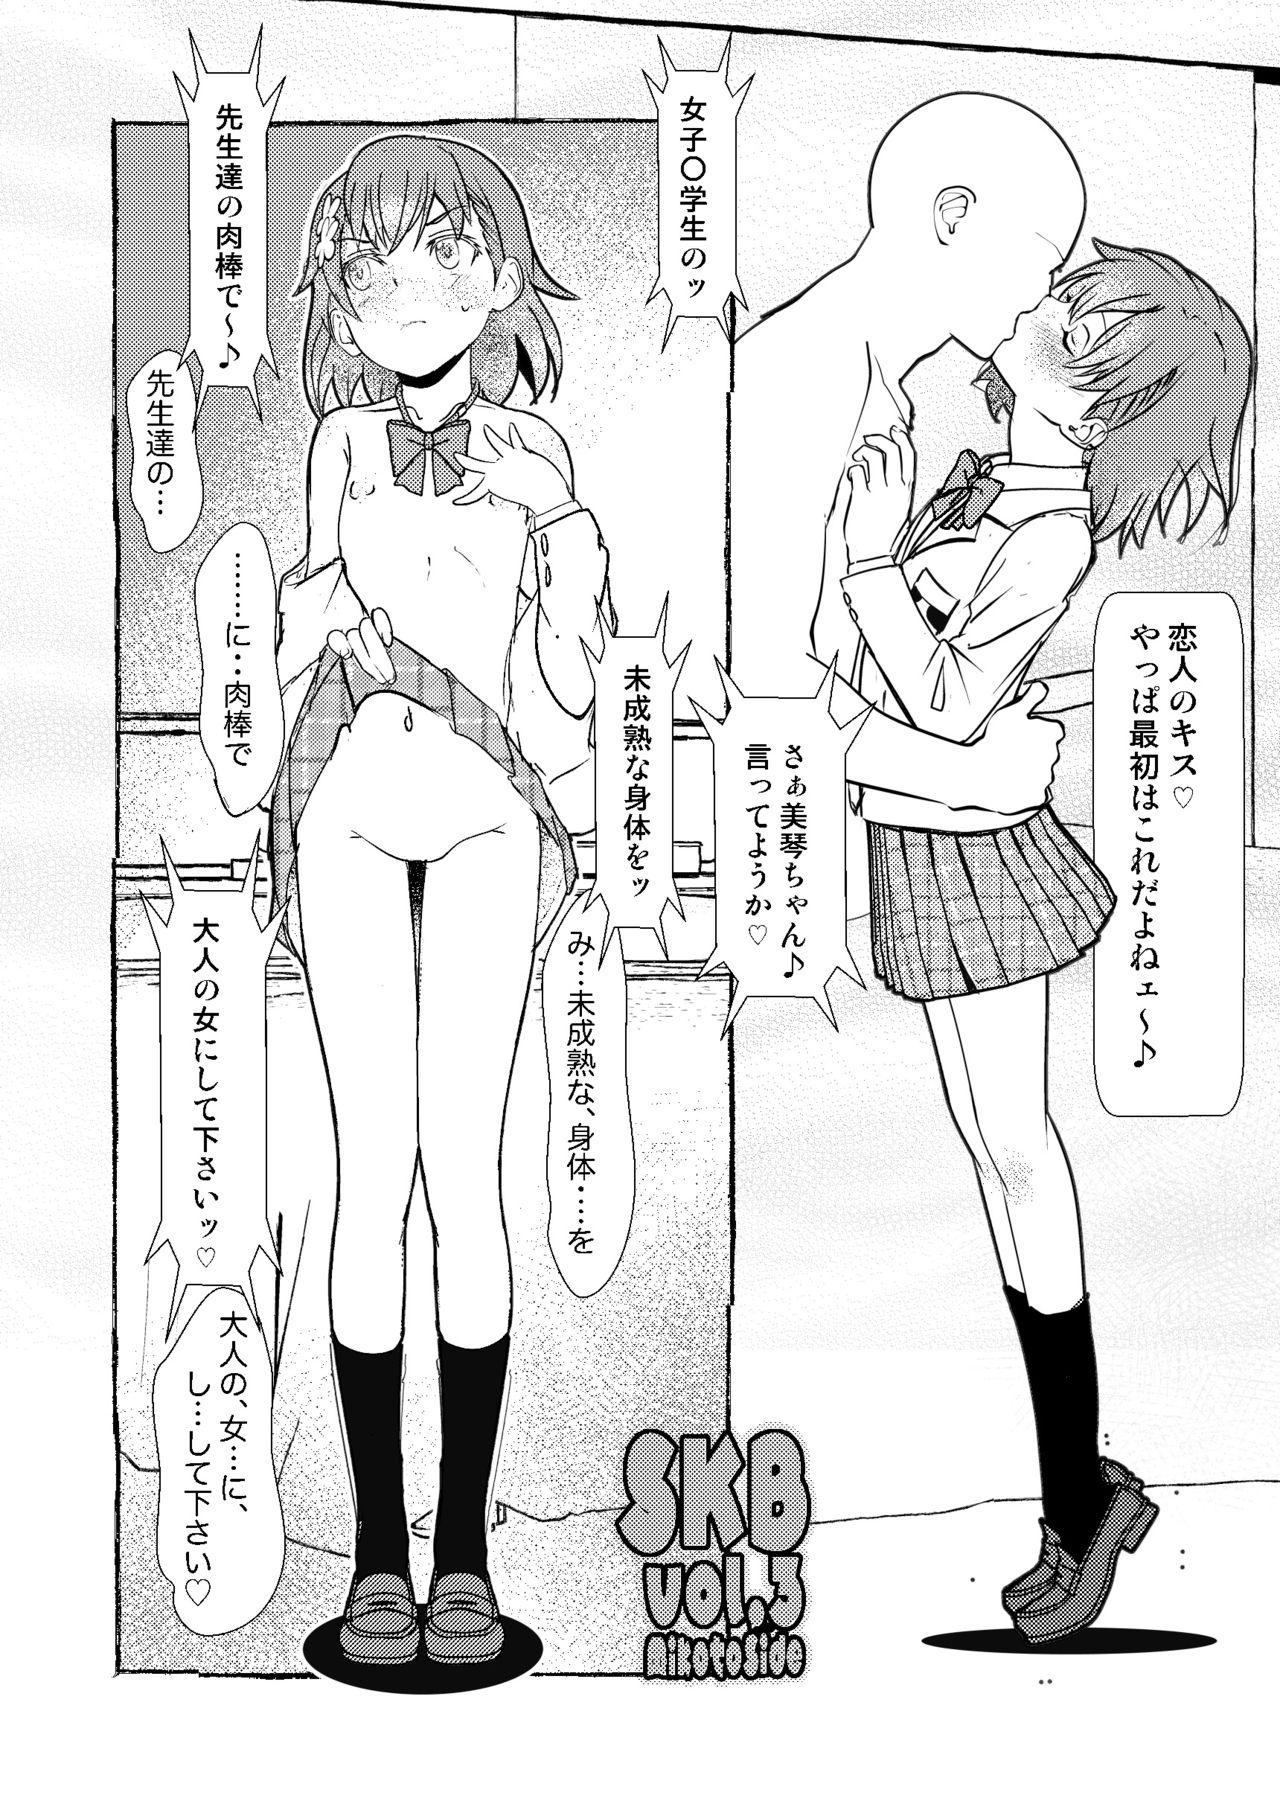 Porn Star SKB vol.3 Mikoto Side - Toaru kagaku no railgun | a certain scientific railgun Foursome - Page 3